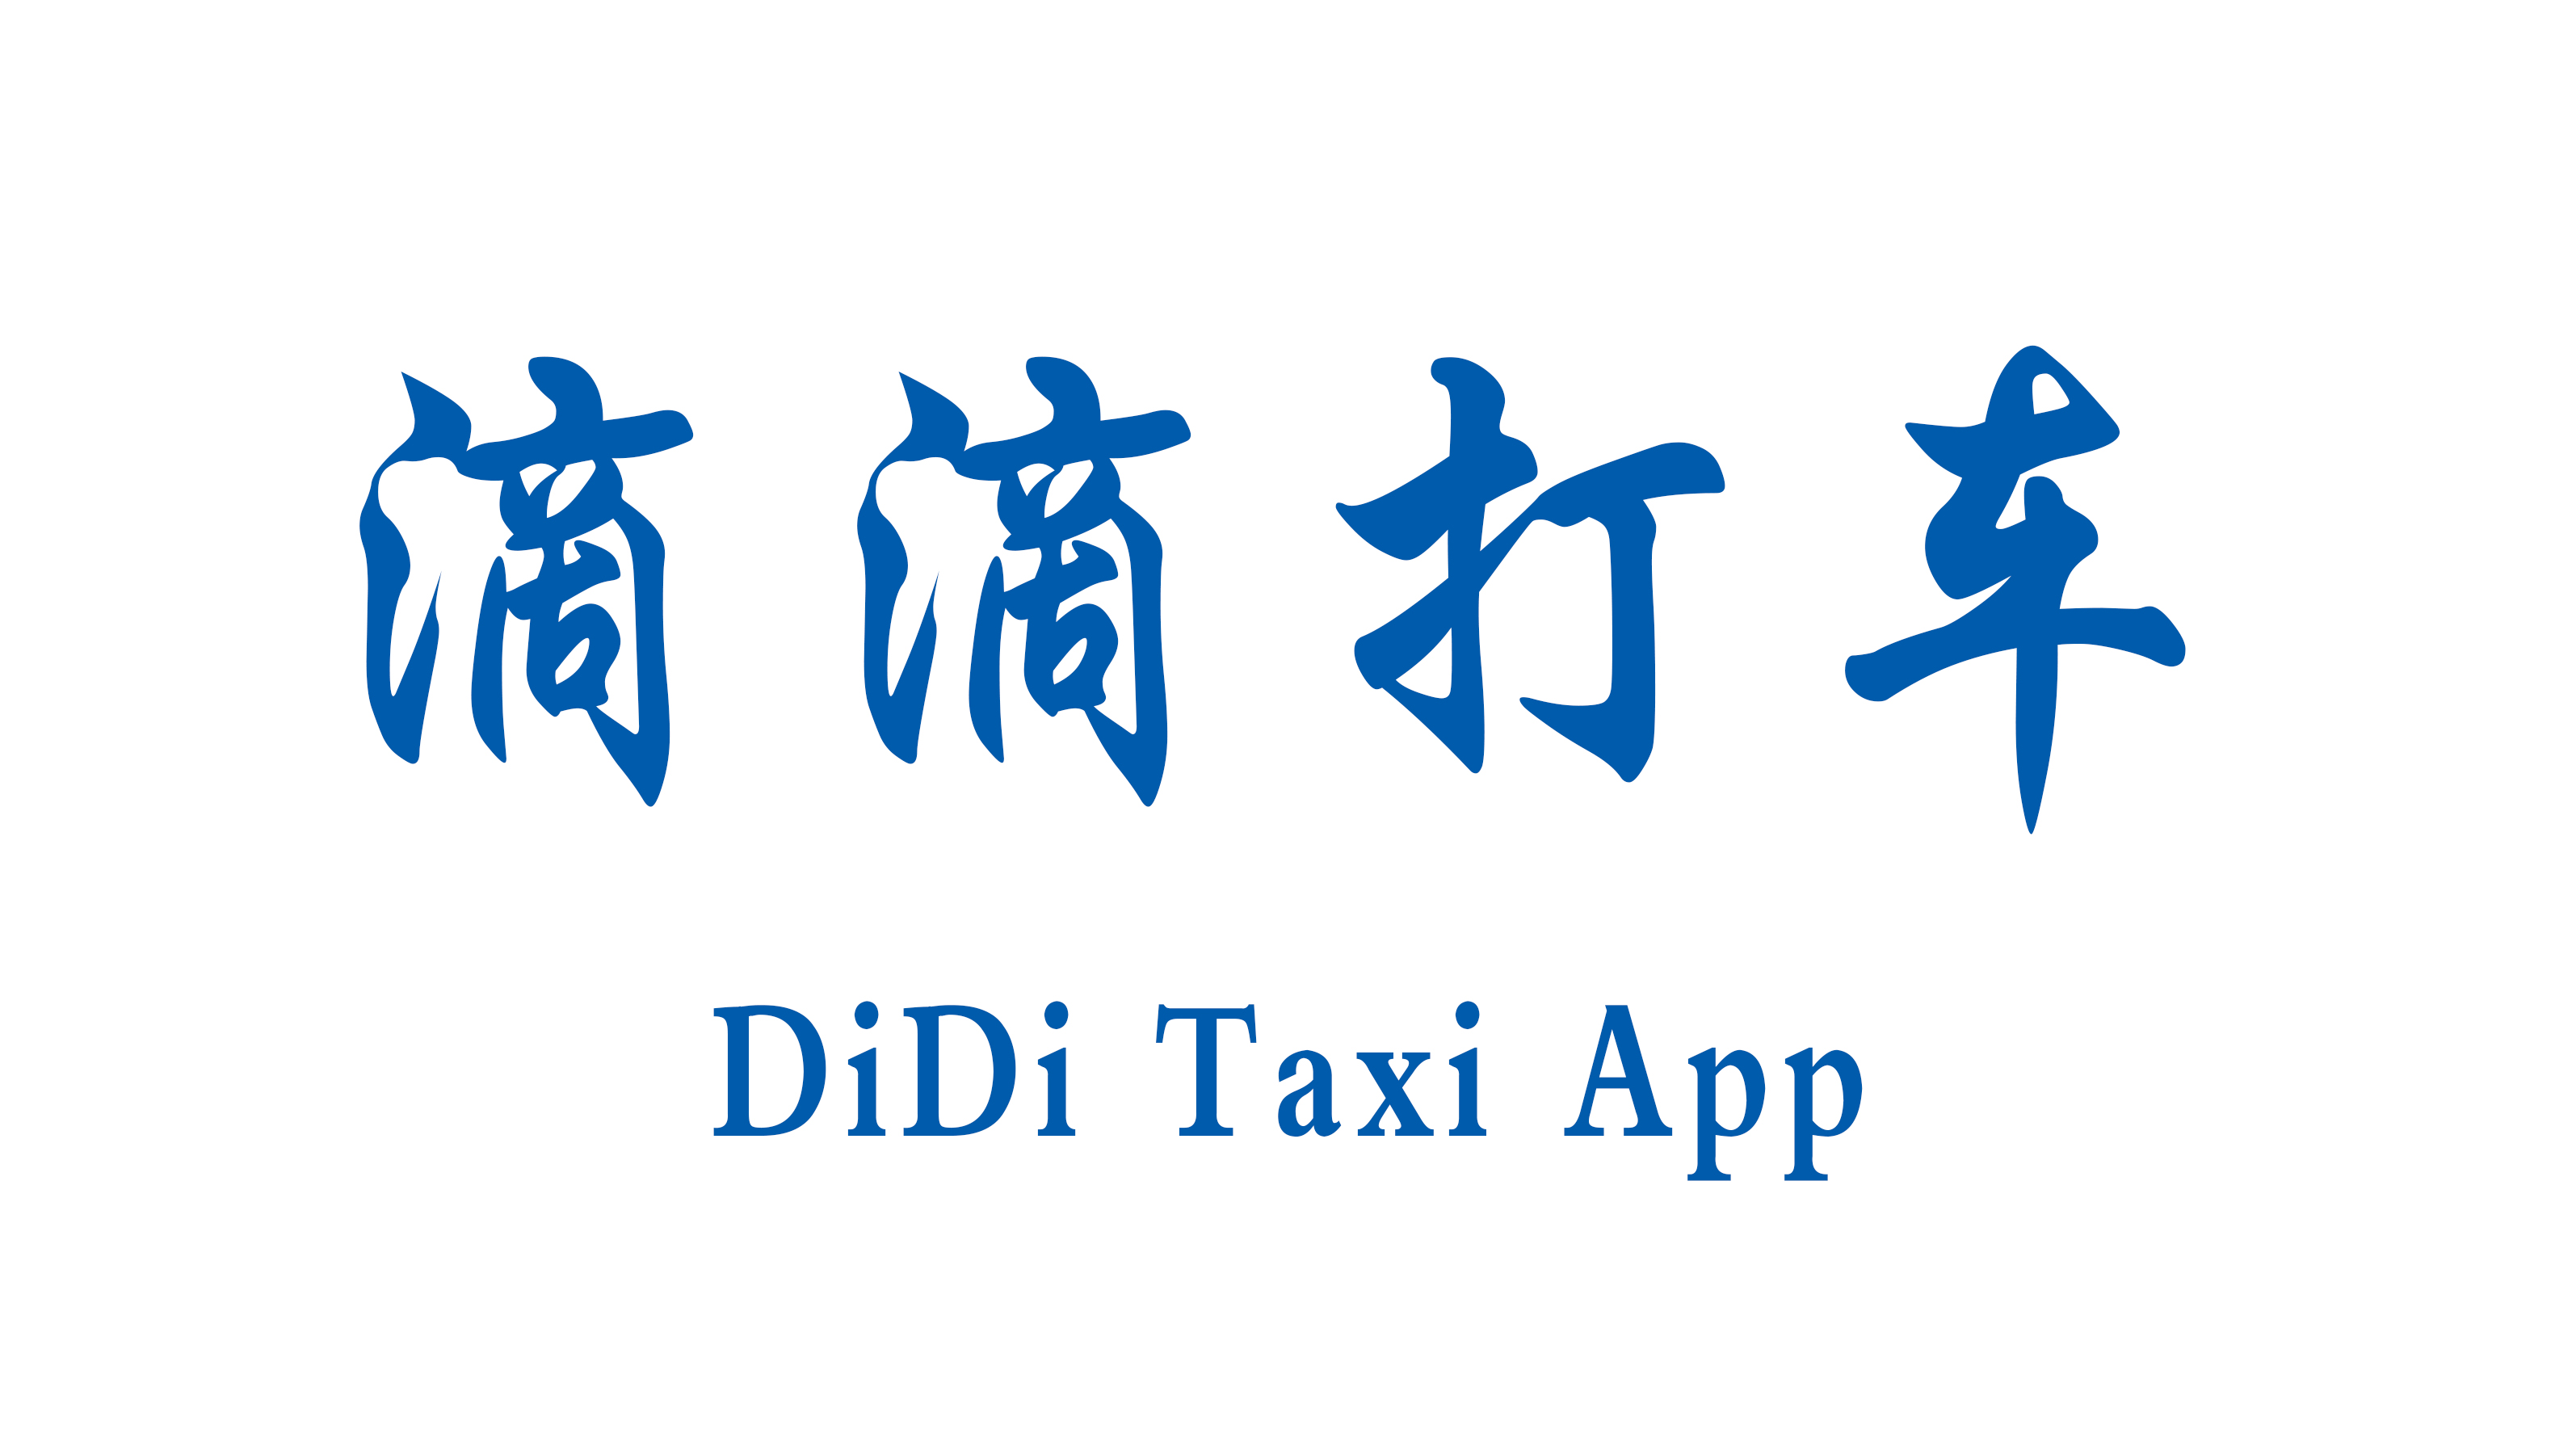 DiDi Taxi App